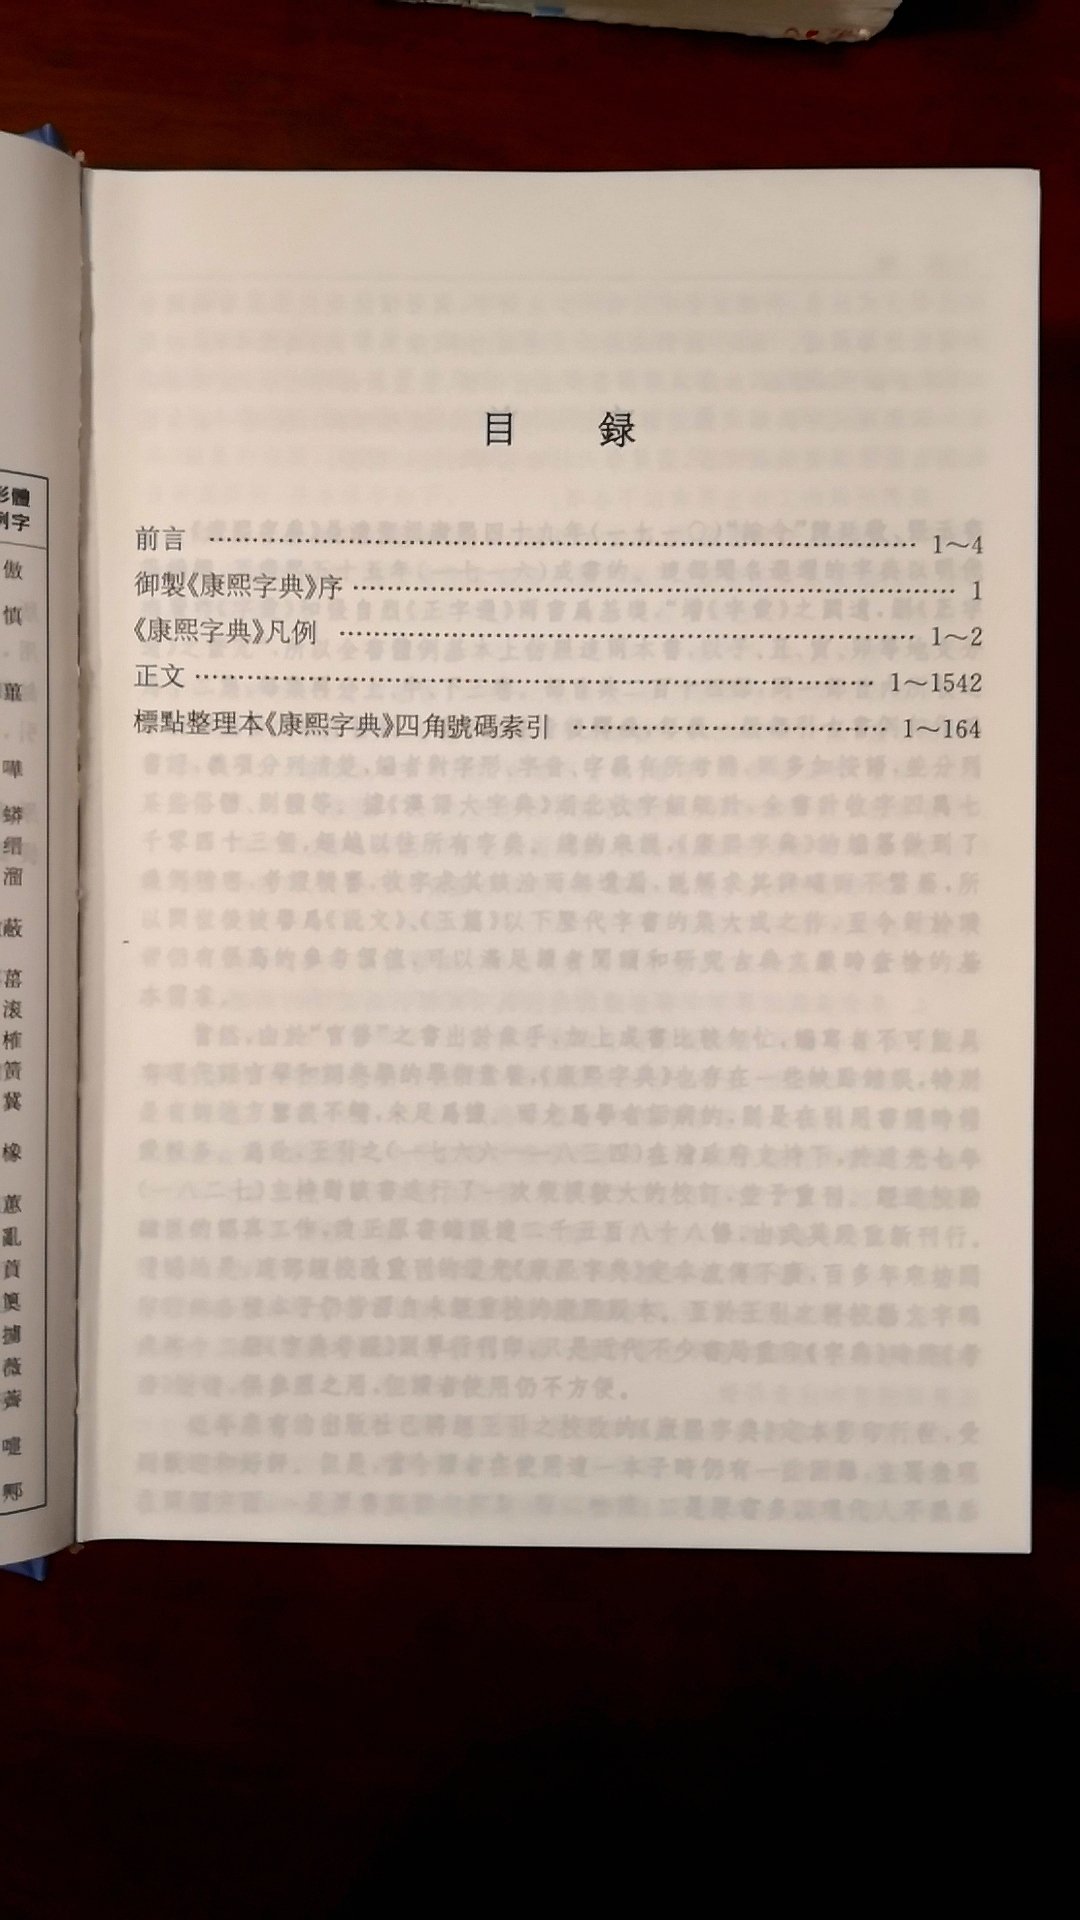 国内很权威的一本书标点整理版《康熙字典》，与影印版相比，加注现代标点、拼音、注音符号，繁体横排，并附带四角号码索引，是一本体例完善、方便实用的汉字工具书